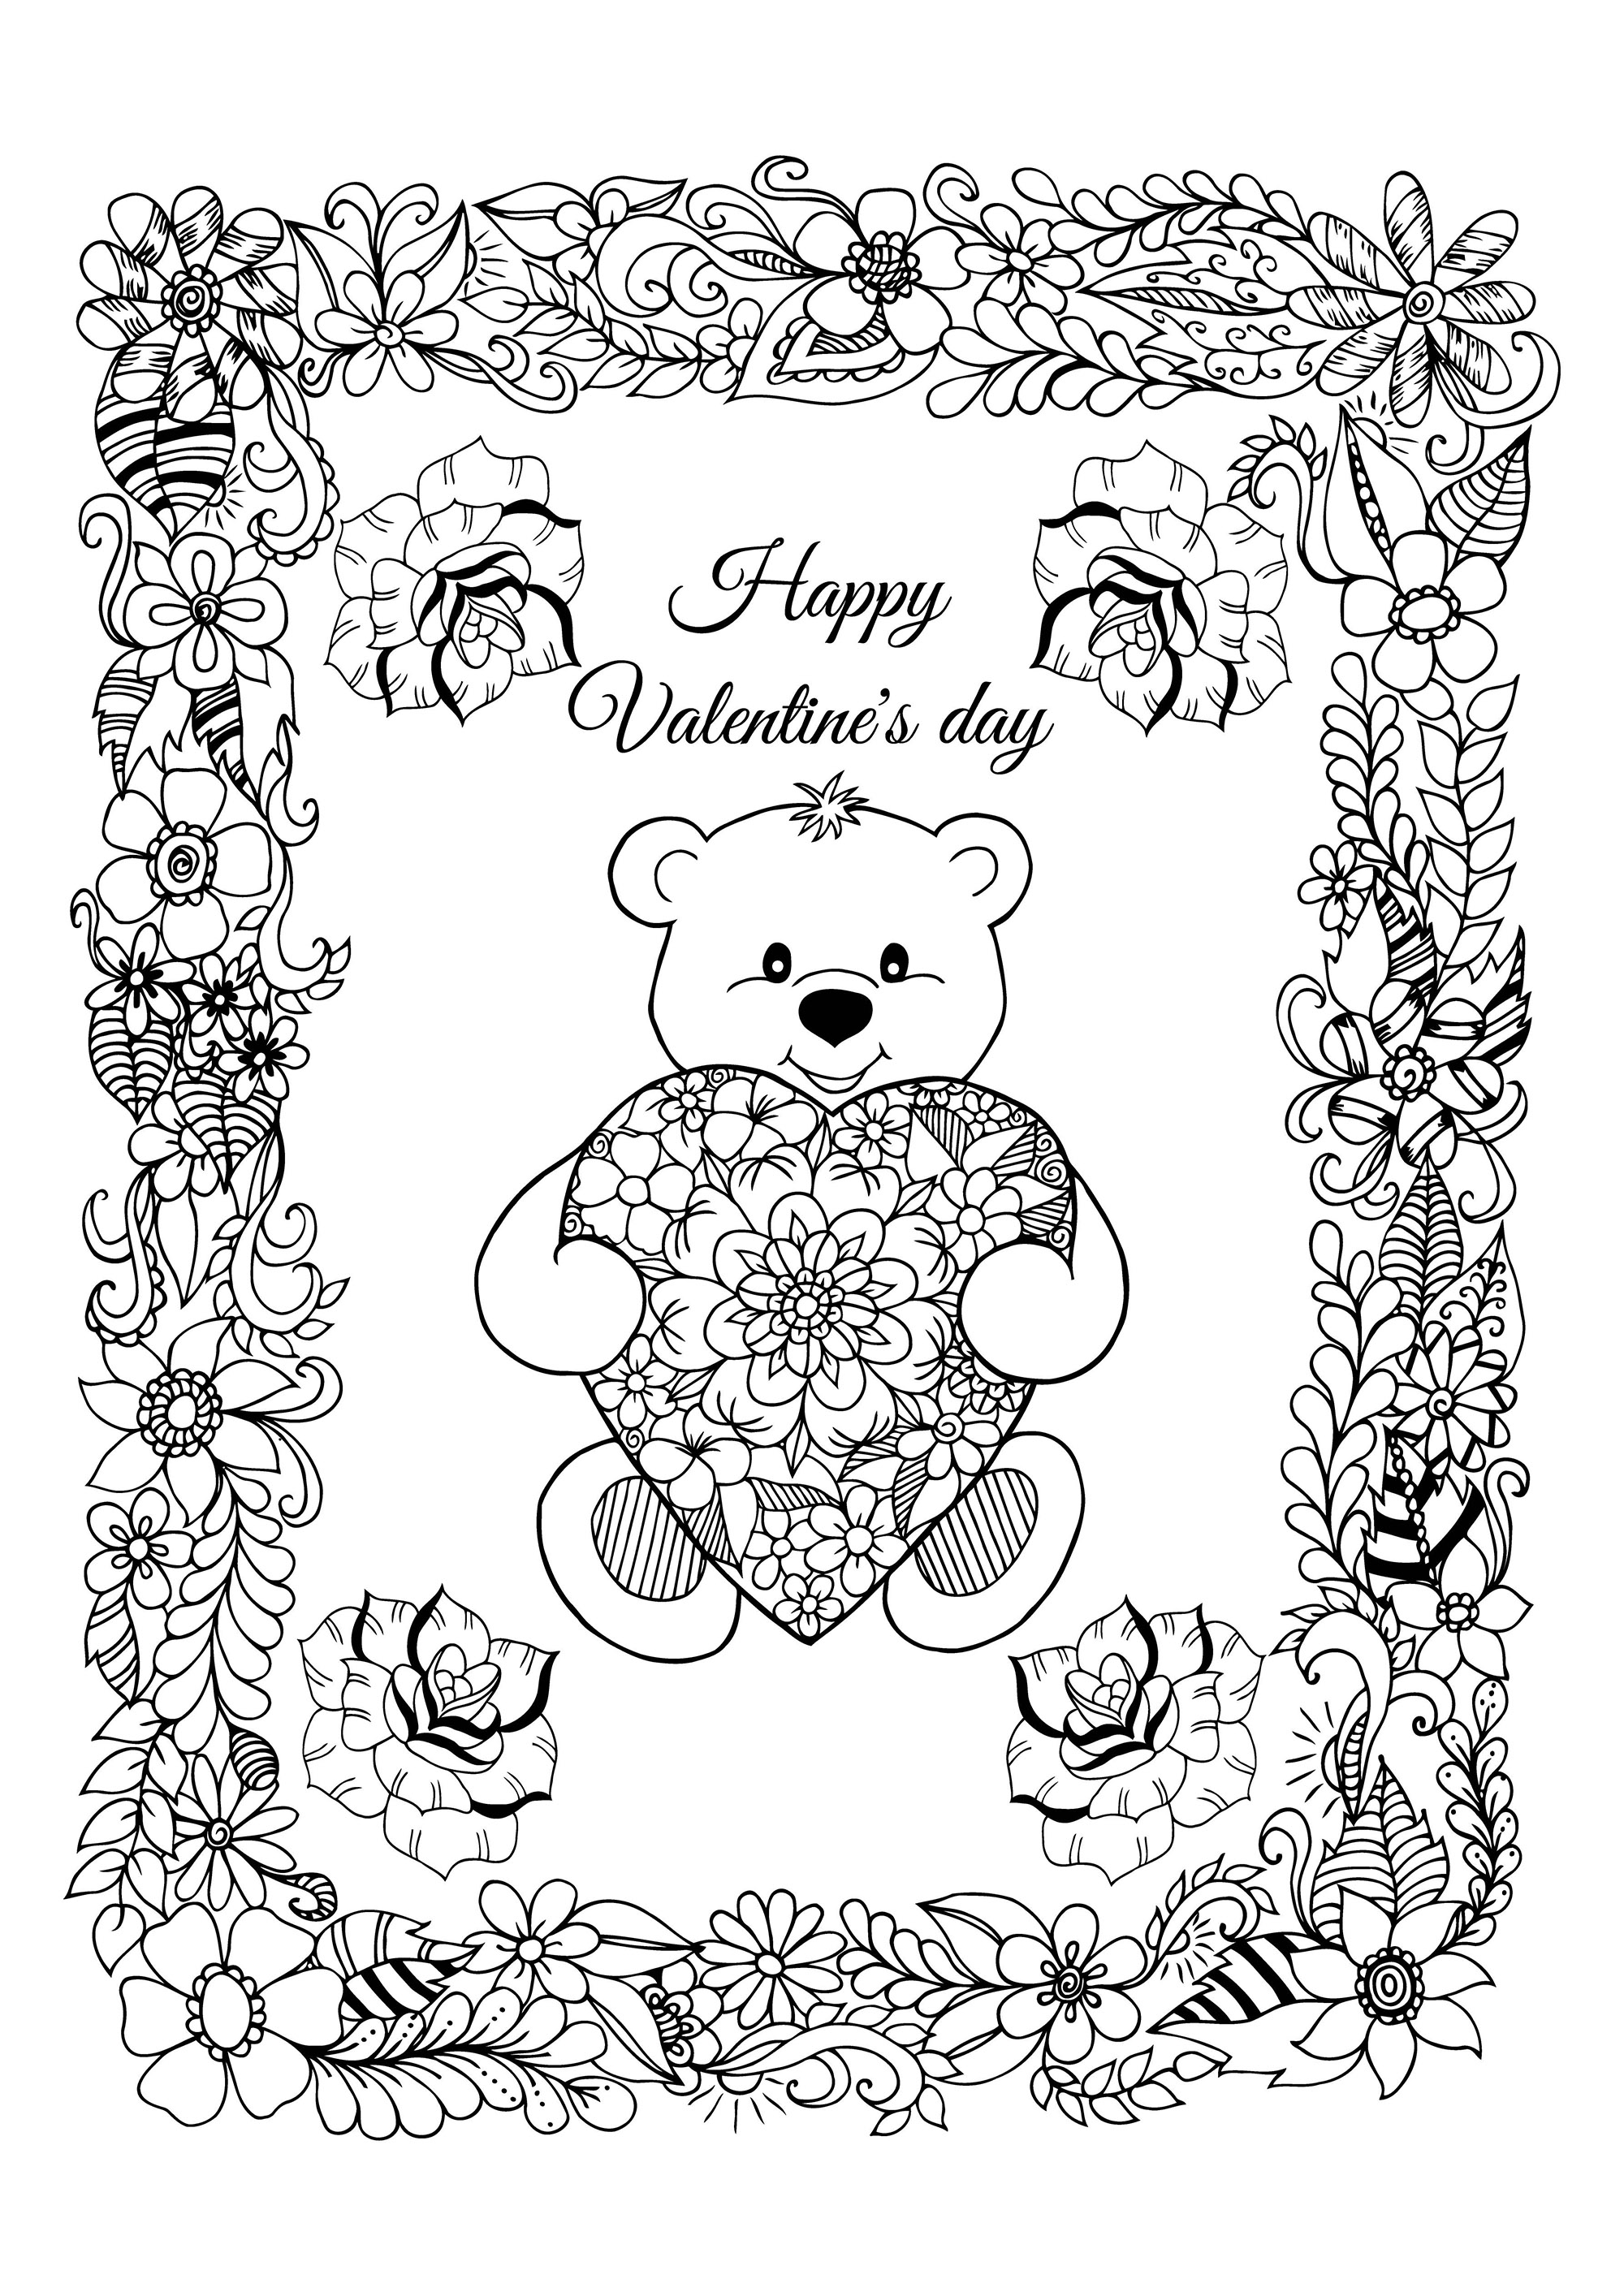 Grazioso biglietto di San Valentino da colorare, con un simpatico orsetto che indossa un cuore con graziosi motivi e una bella cornice piena di fiori, Artista : Maritel67   Fonte : 123rf